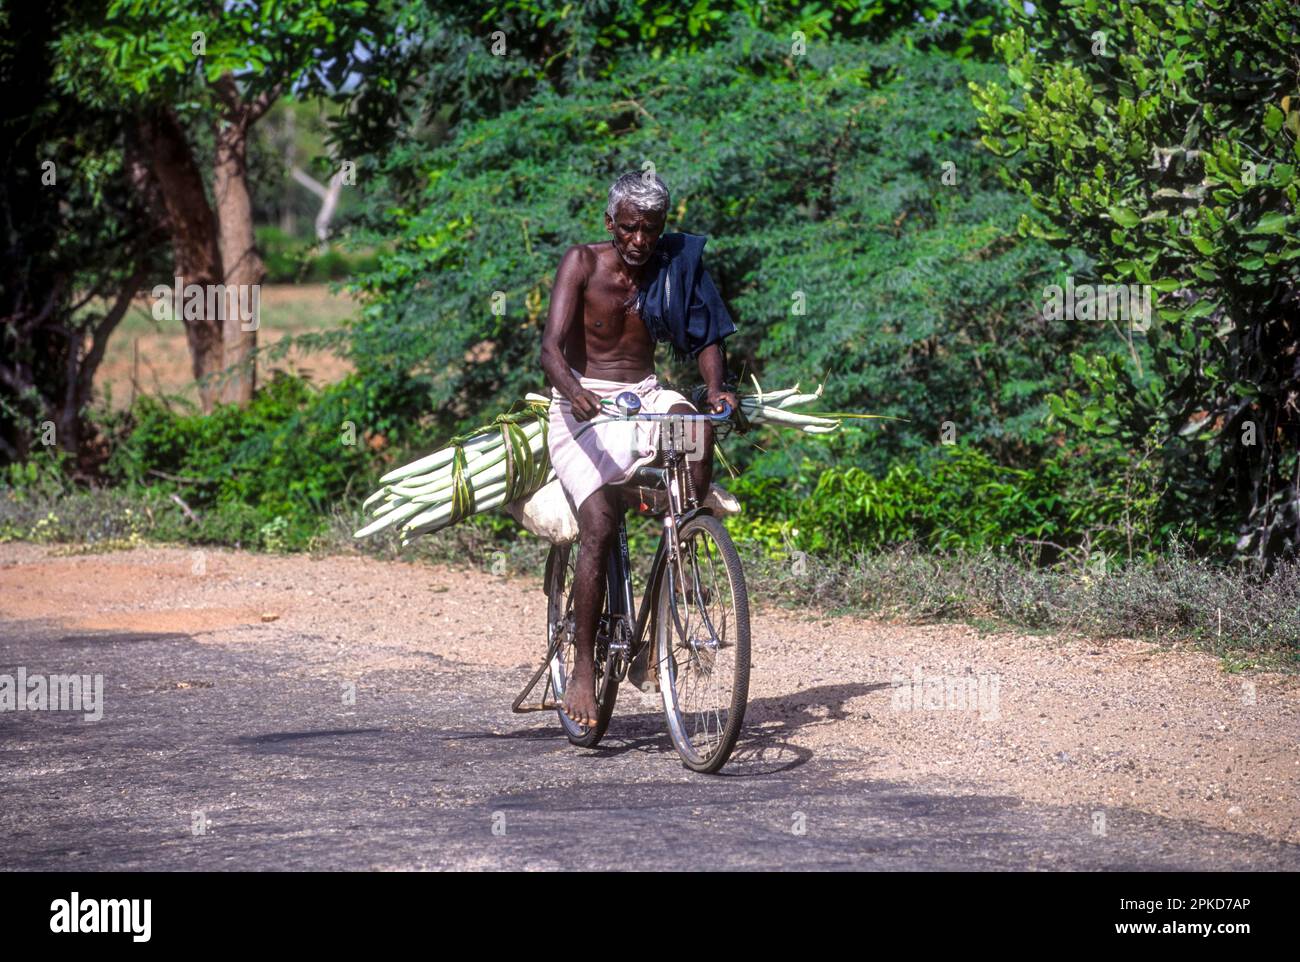 Ein alter Mann, der mit dem Fahrrad Gemüseschlangengurke (Trichosanthes cucumerina) trägt, Tamil Nadu, Südindien, Indien, Asien Stockfoto